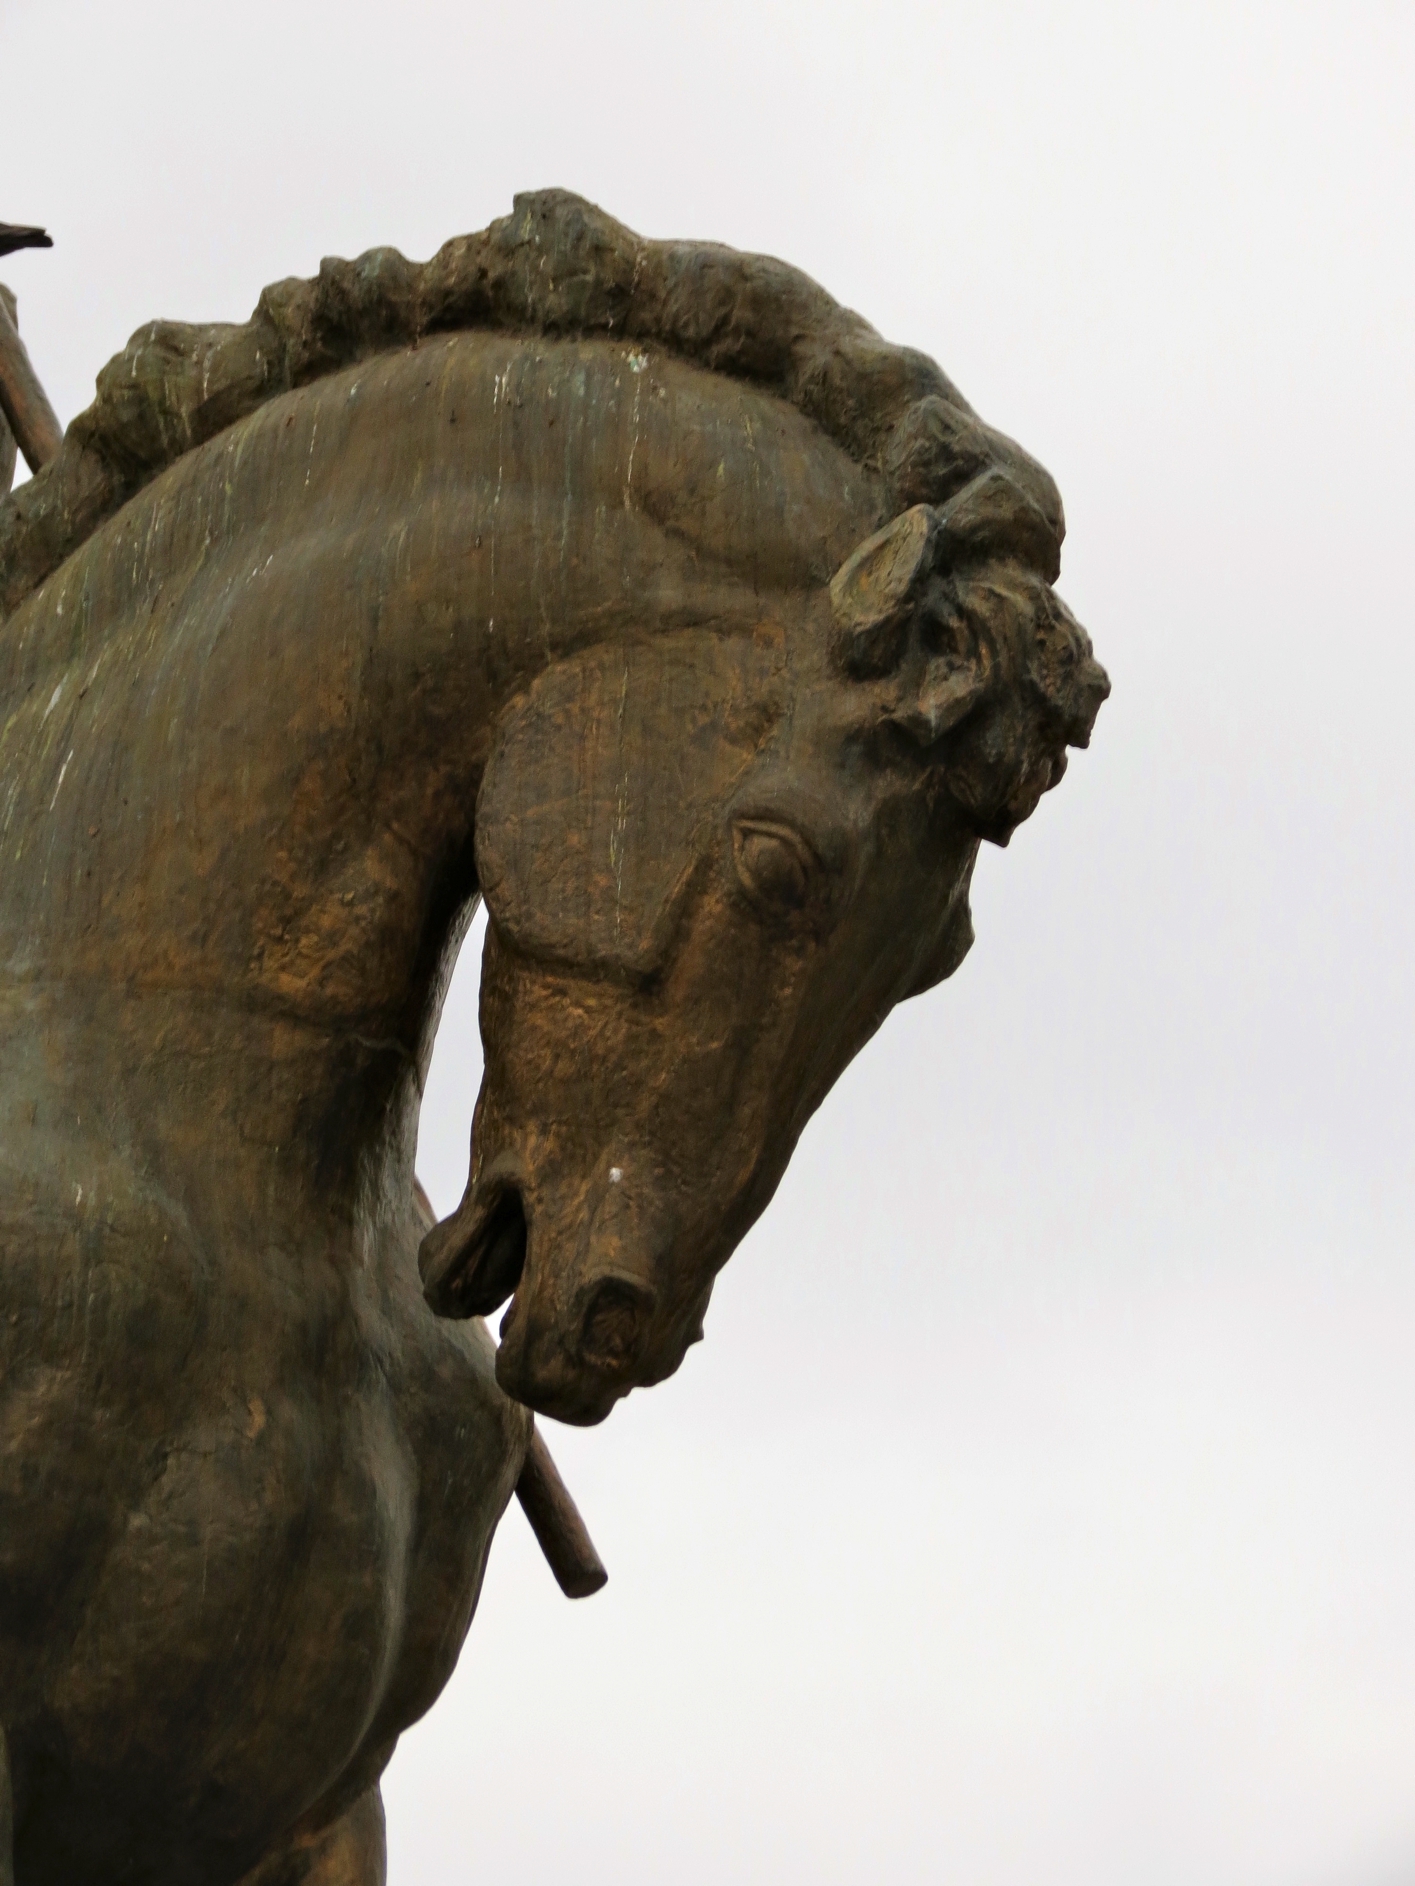 Equestrian statue of Decebalus in Deva Romania